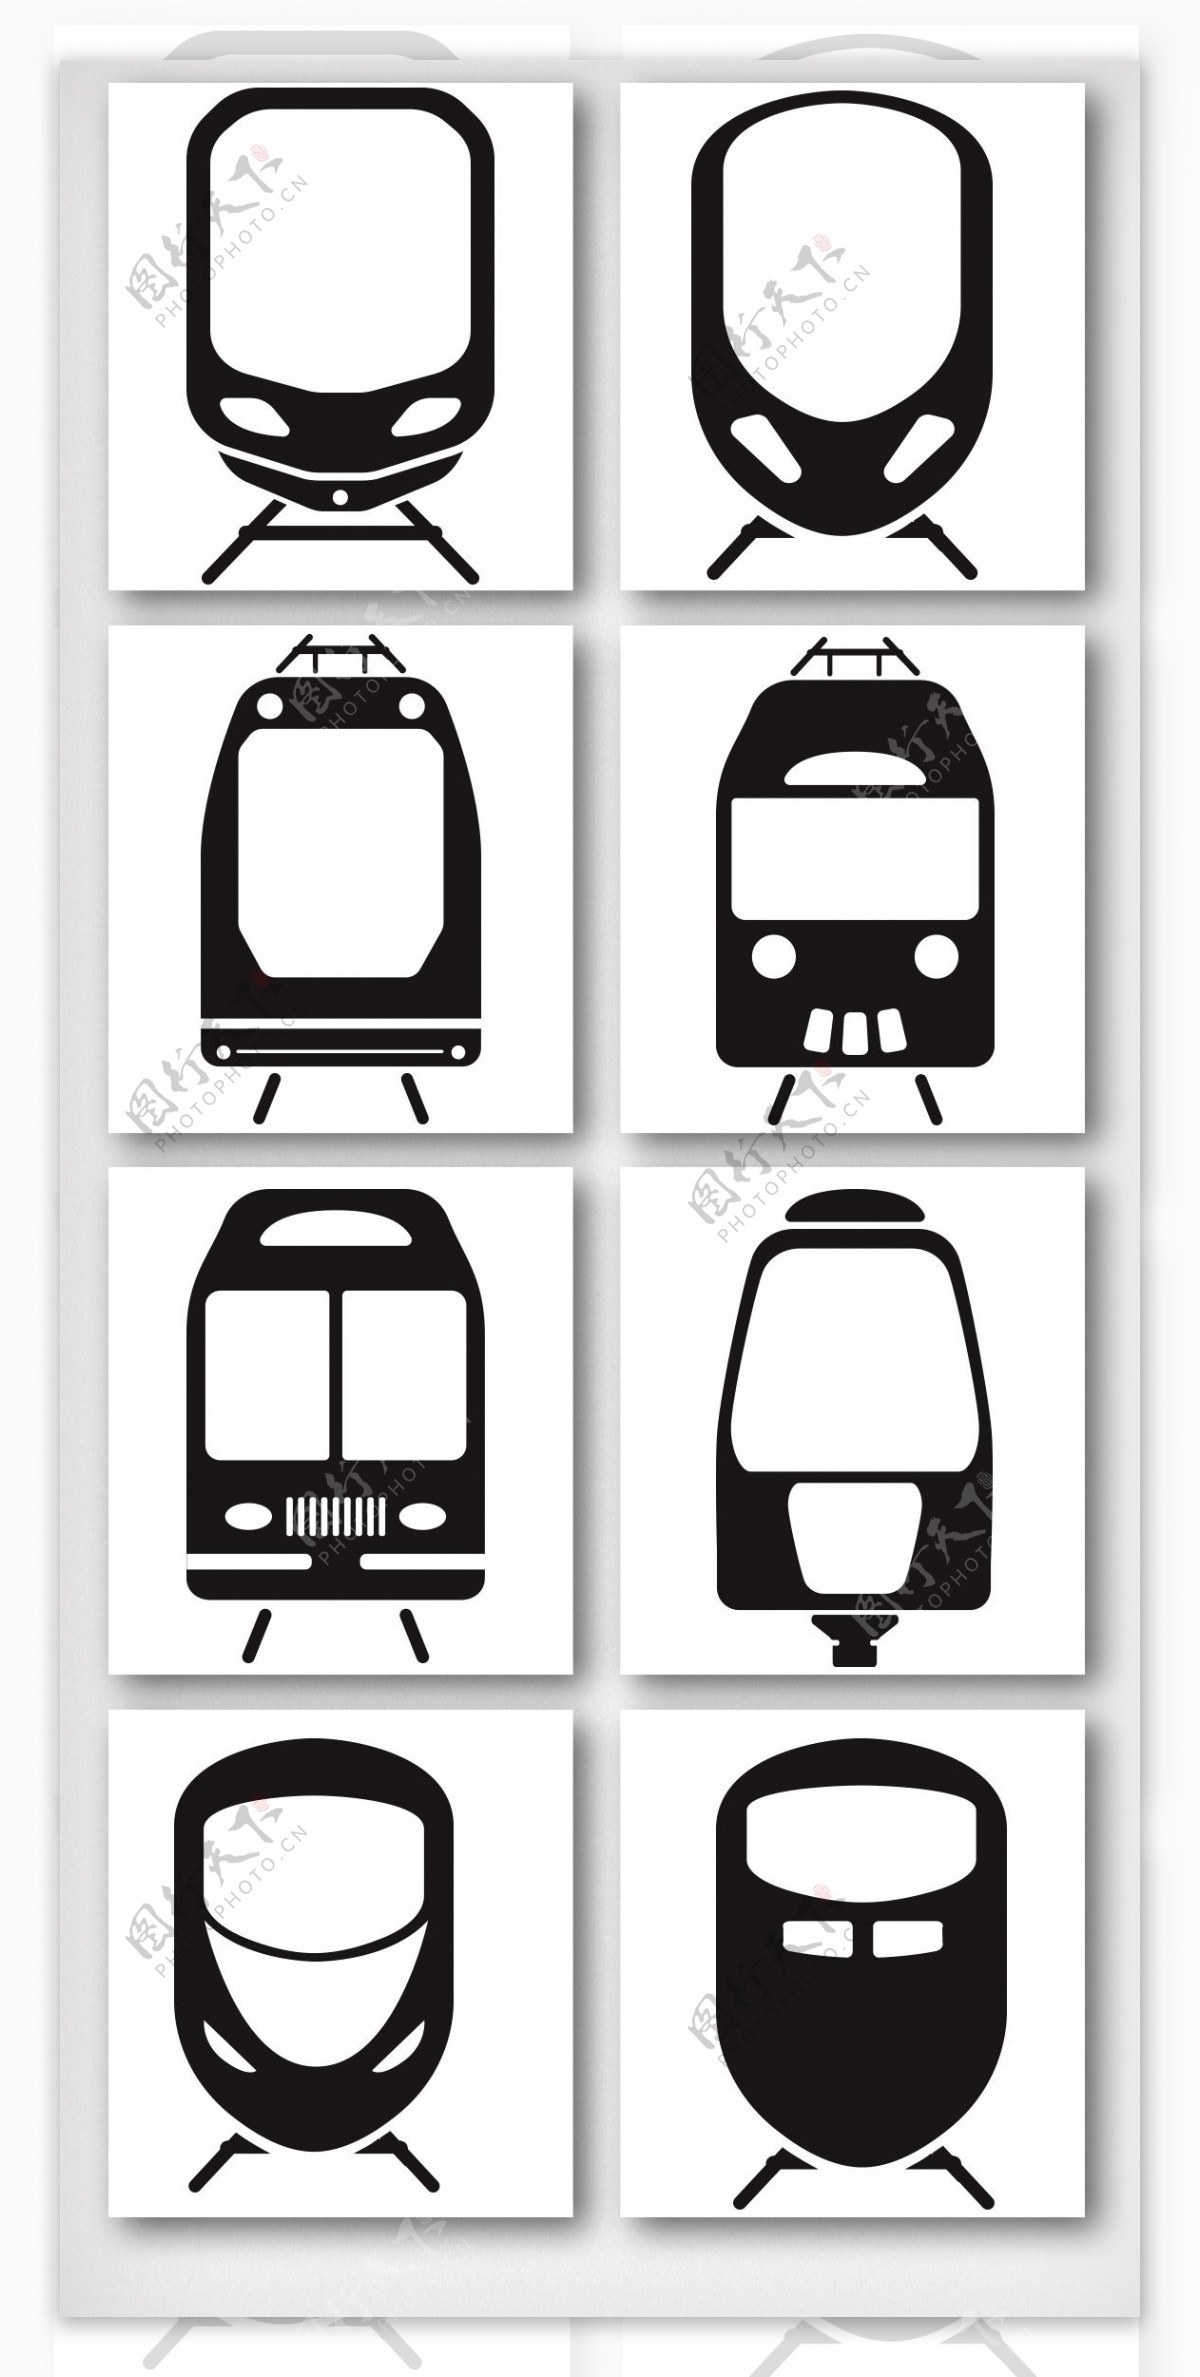 卡通黑白剪影火车头图案元素